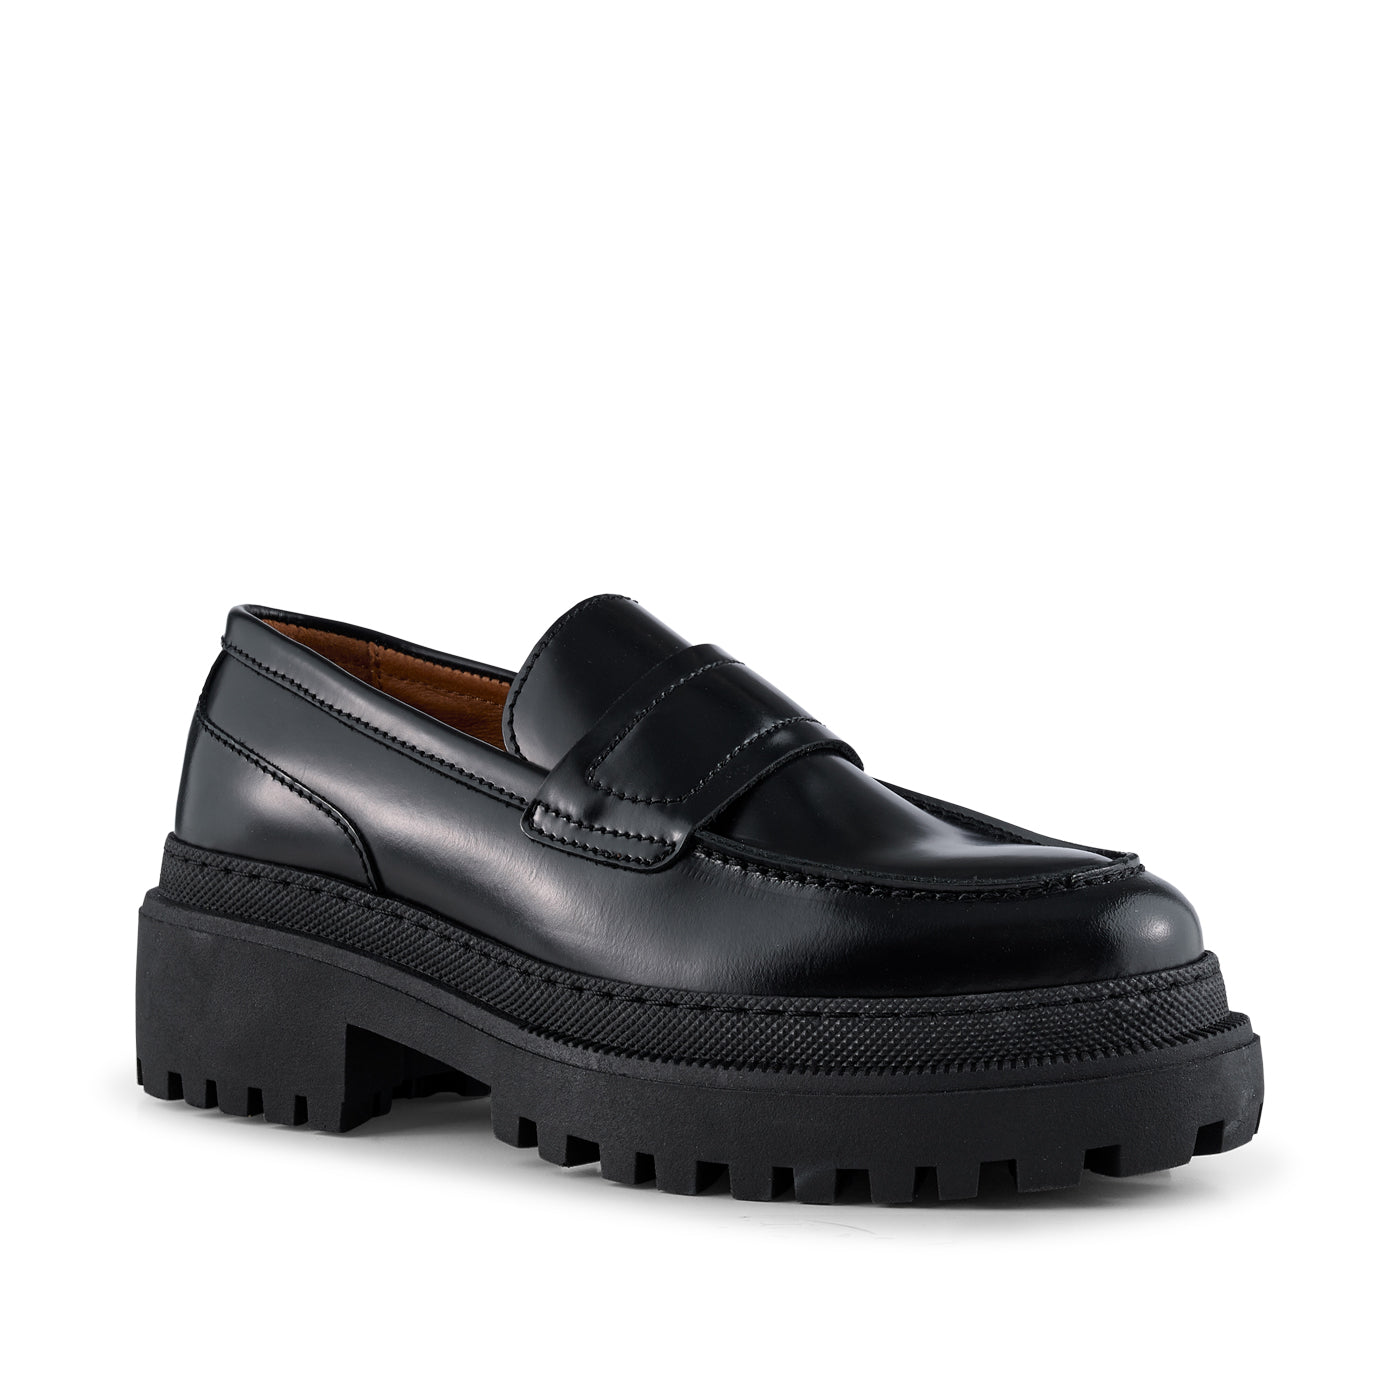 SHOE THE BEAR WOMENS Iona loafer læder  Loafers 817 BLACK POLIDO HIGH SHINE